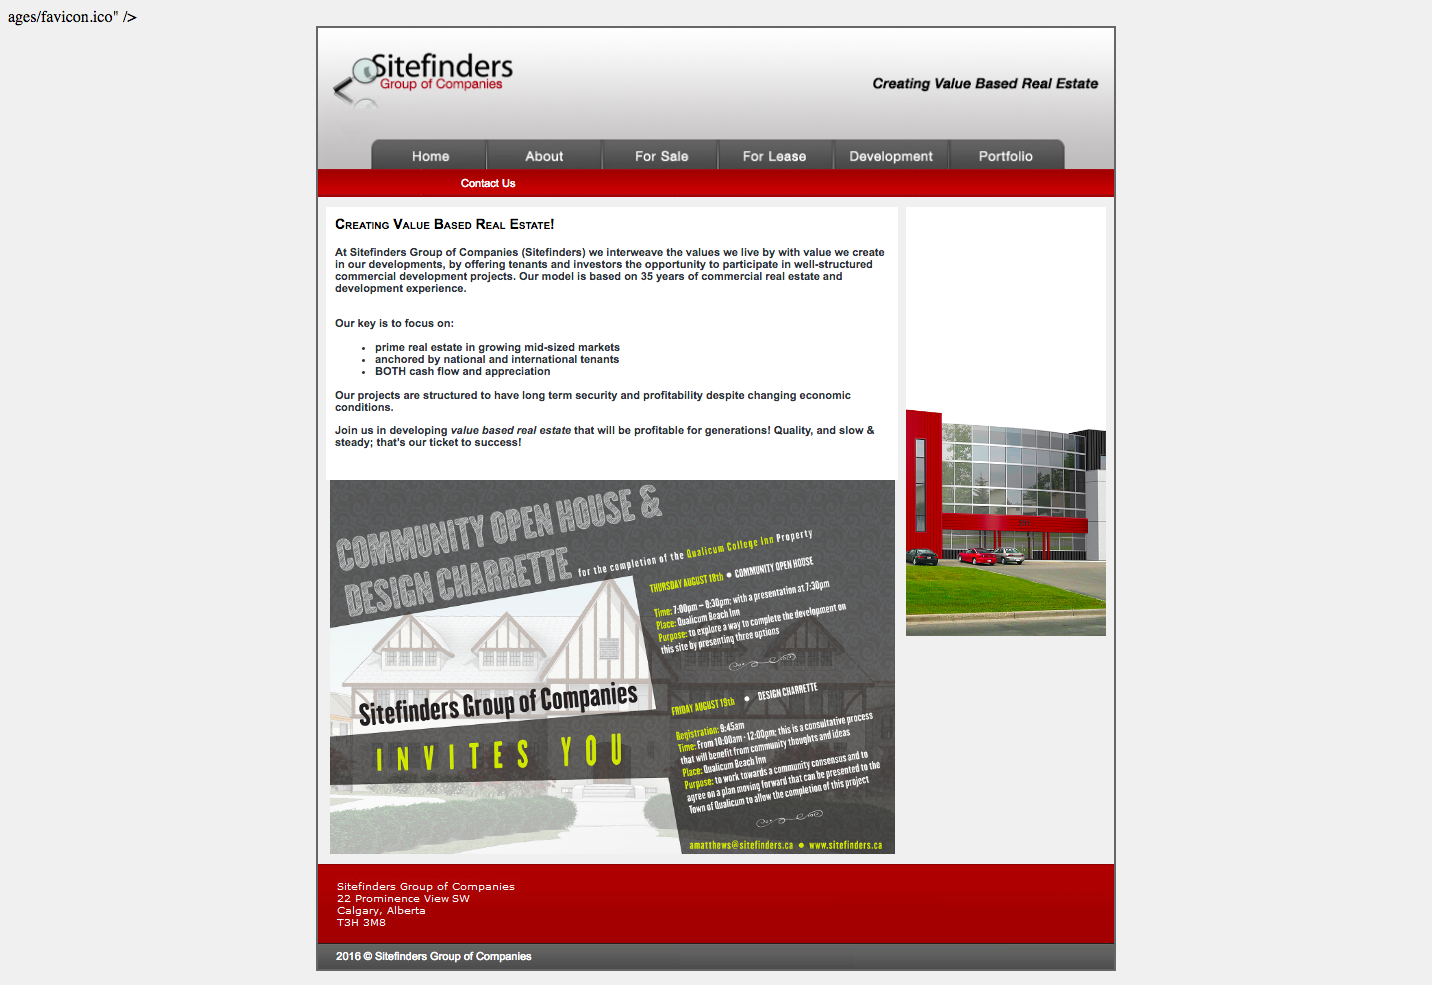 Sitefinders' original homepage.